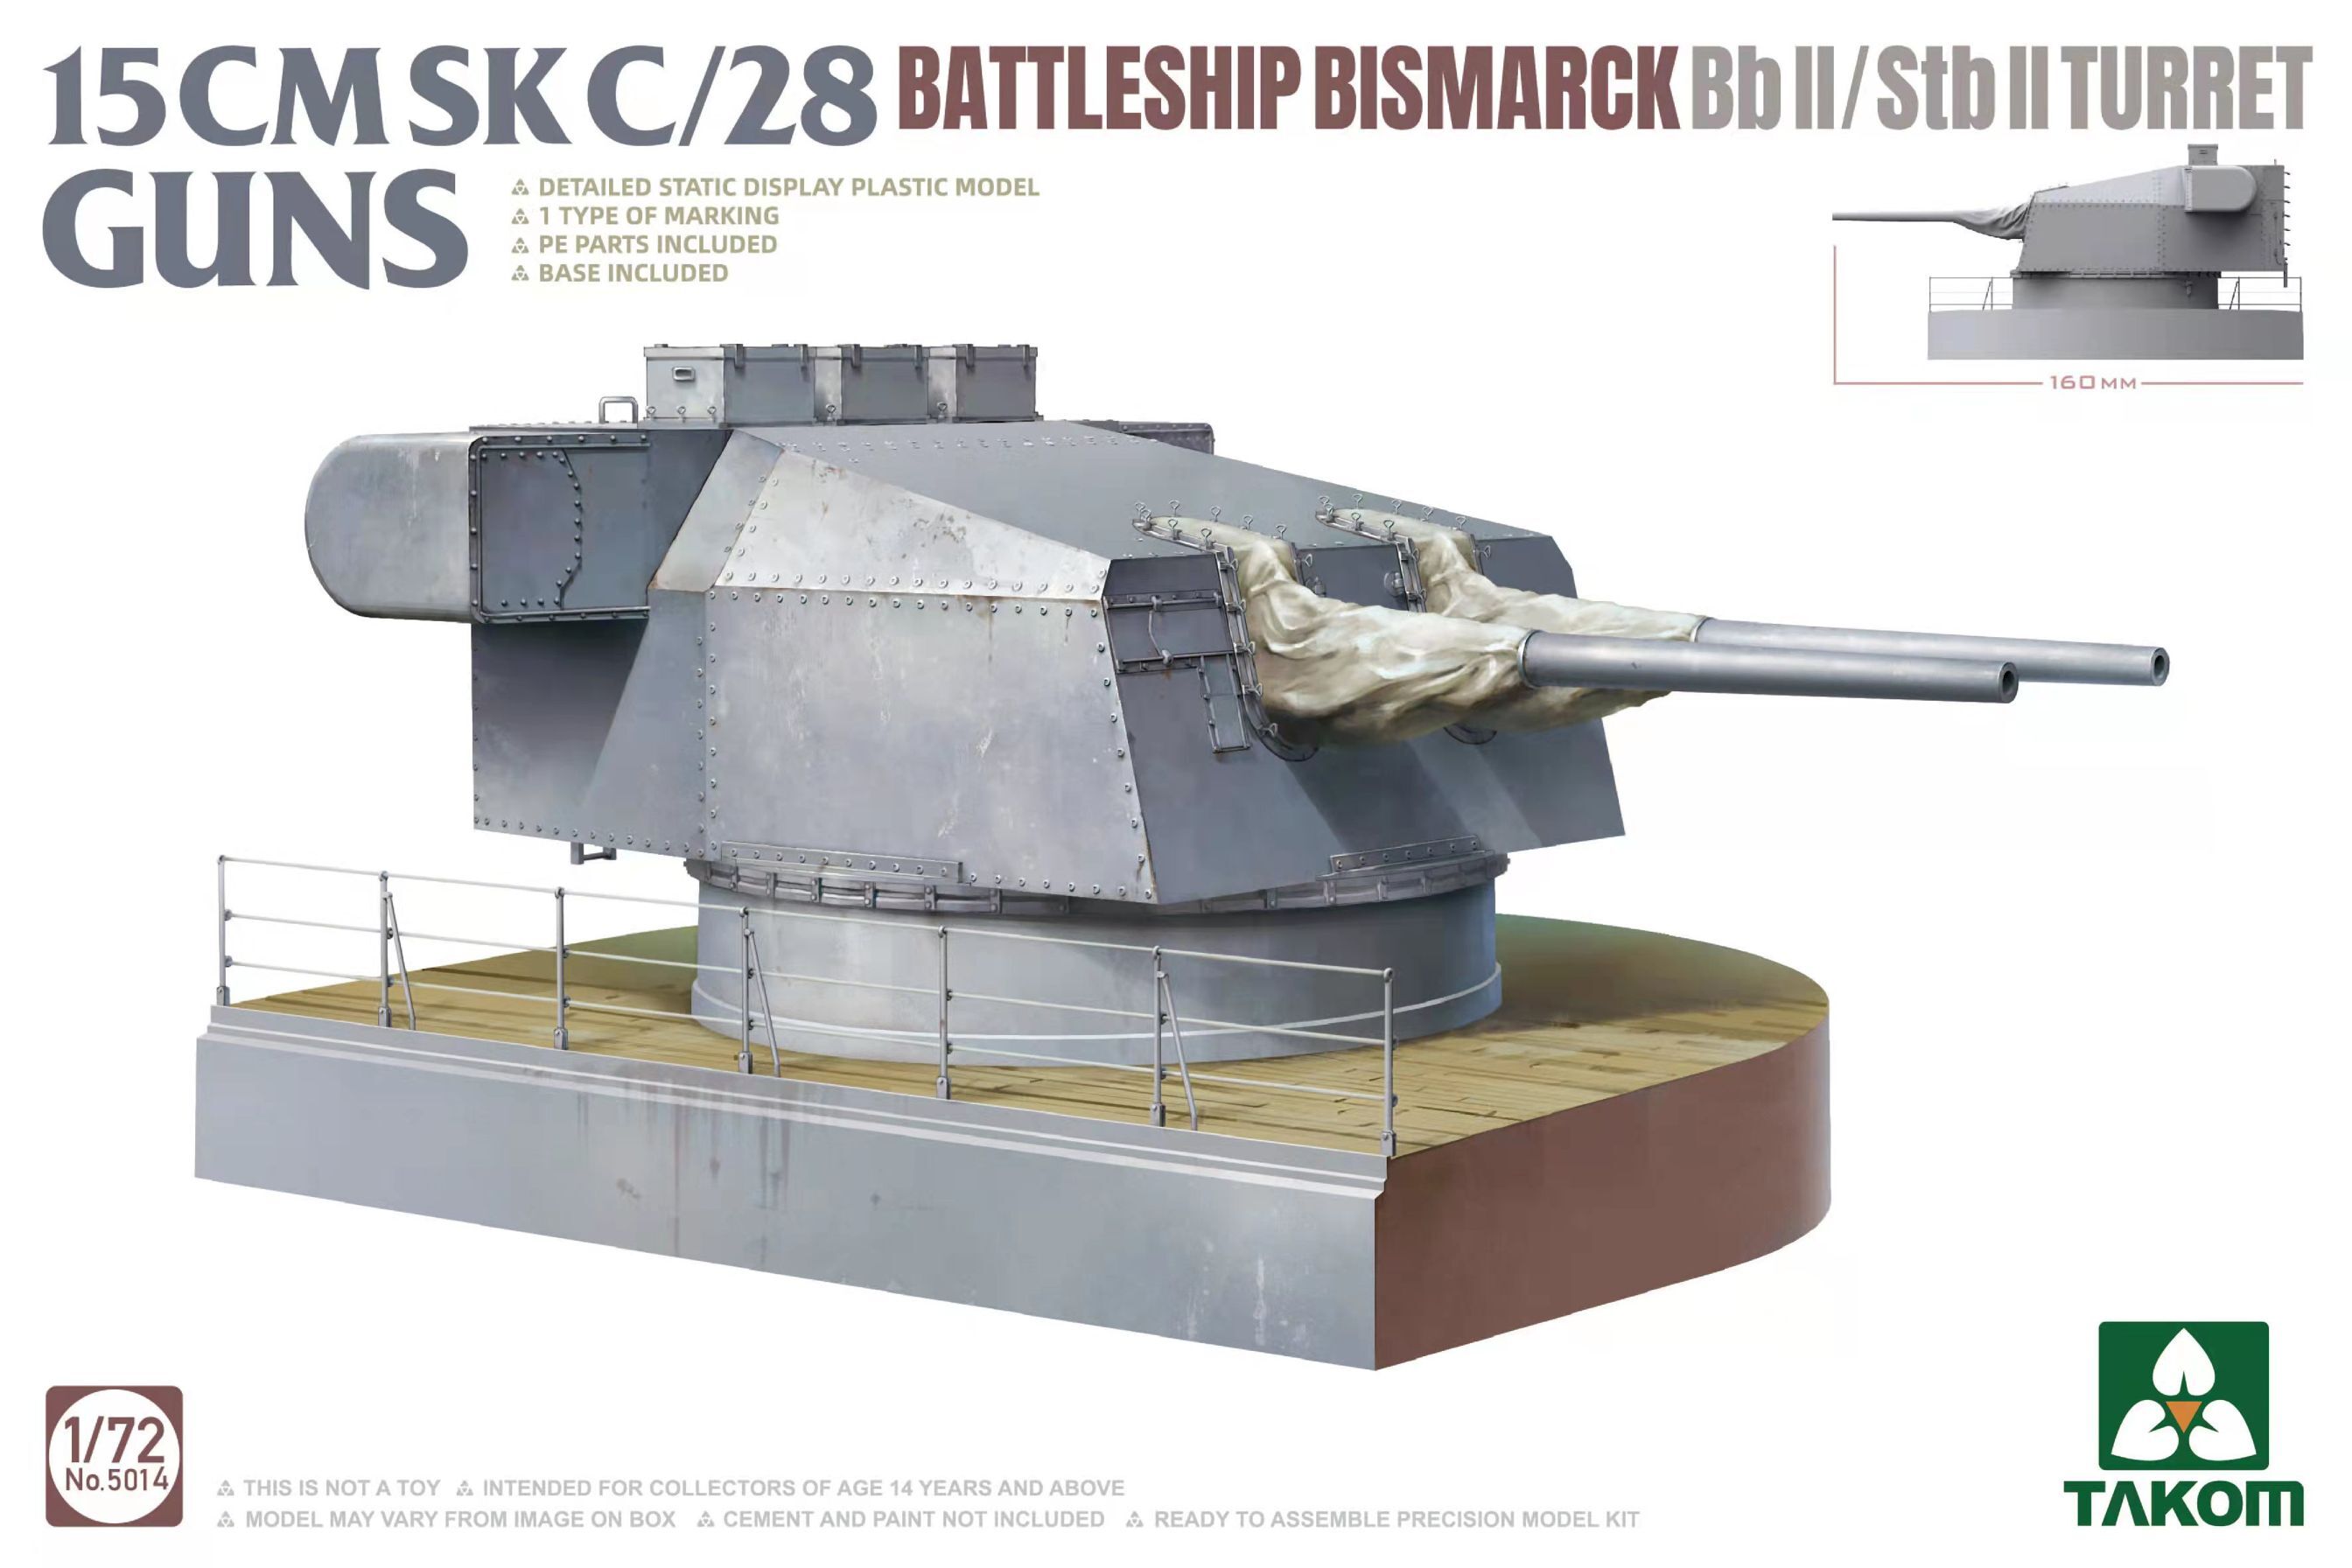 5014  техника и вооружение  15 cm Sk C/28 Guns Bismarck Bb II/Stb II Turret  (1:72)